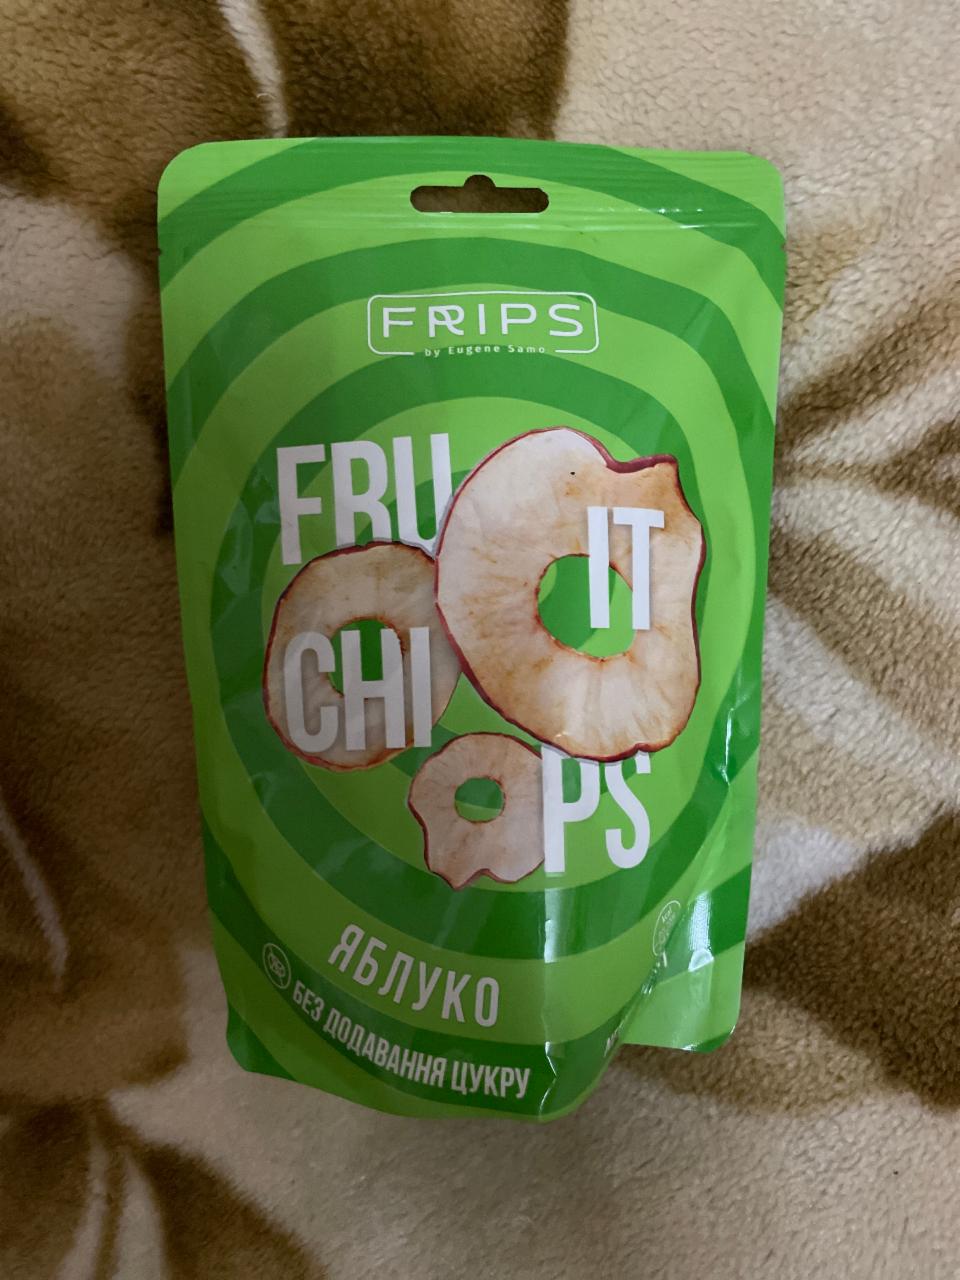 Фото - Чипсы яблочные Fruit chips Frips